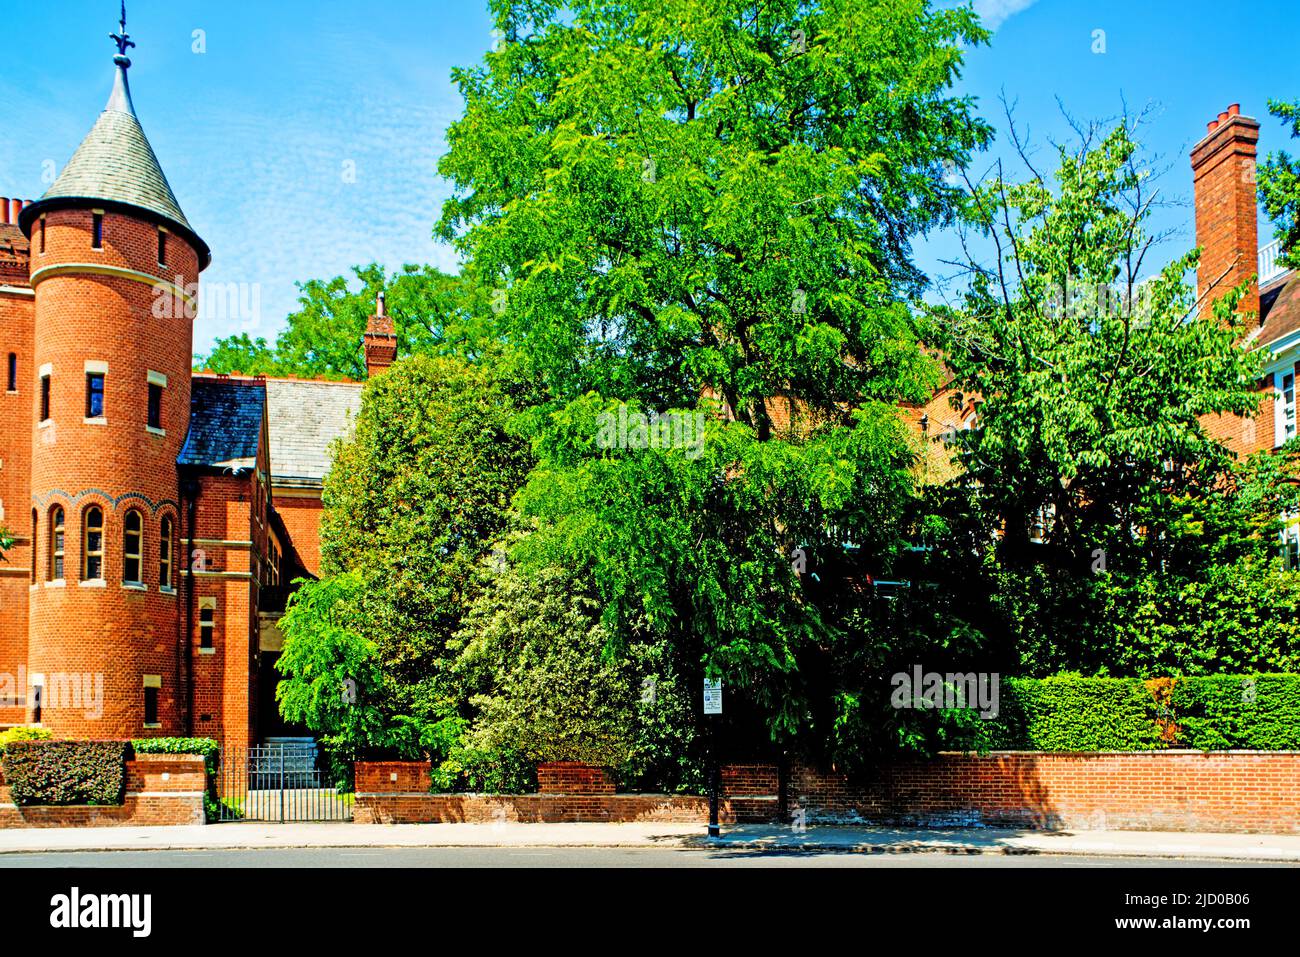 Tower House et Woodland House, respectivement propriété du guitariste LED Zeppelin Jimmy page et de la chanteuse Robbie Williams, Melbury Road, Holland Park, Londres Banque D'Images